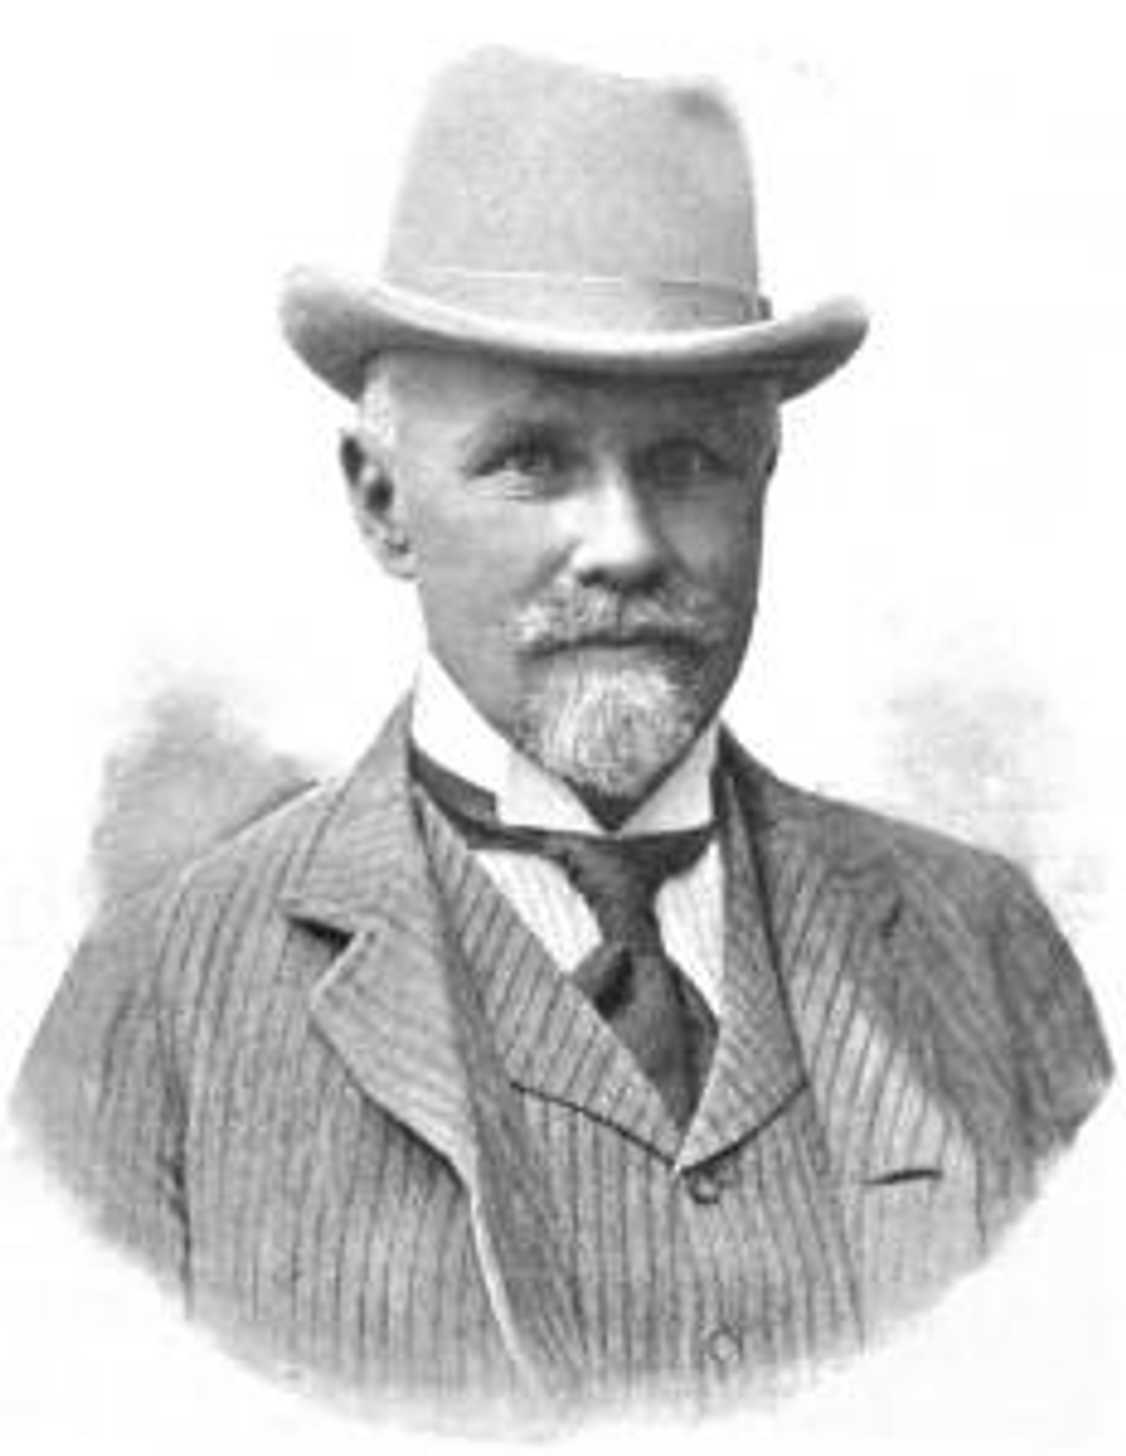 Heinrich Larisch-Mönnich
